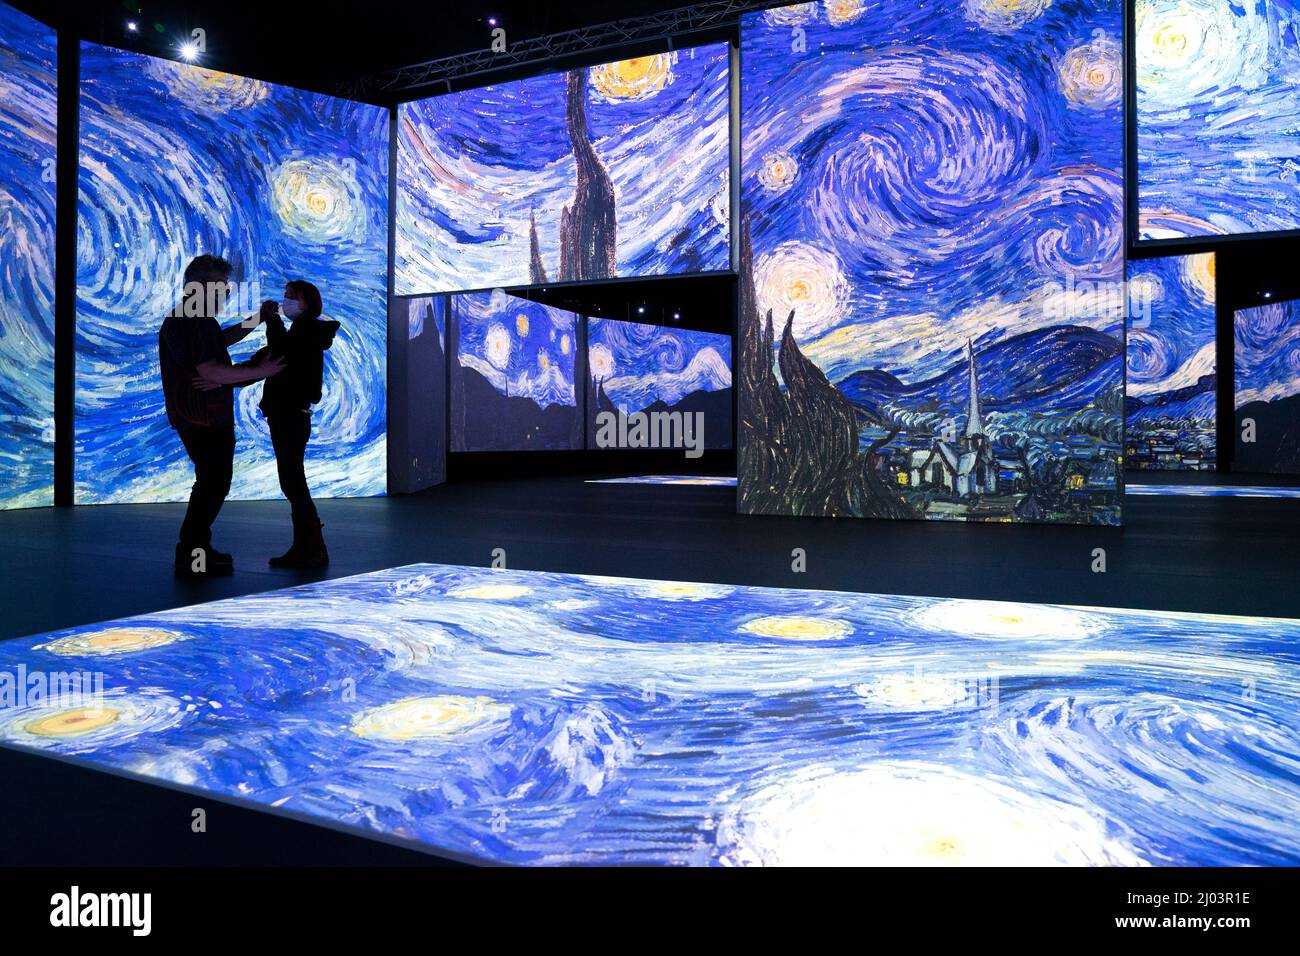 Un couple dansait pendant la présentation de Van Gogh Alive, une expérience d'art immersive et multisensorielle combinant des projections haute définition des peintures de Van Gogh avec son surround numérique et arômes de Provence, sur la place du Festival, à Édimbourg. Date de la photo: Mercredi 16 mars 2022. Banque D'Images